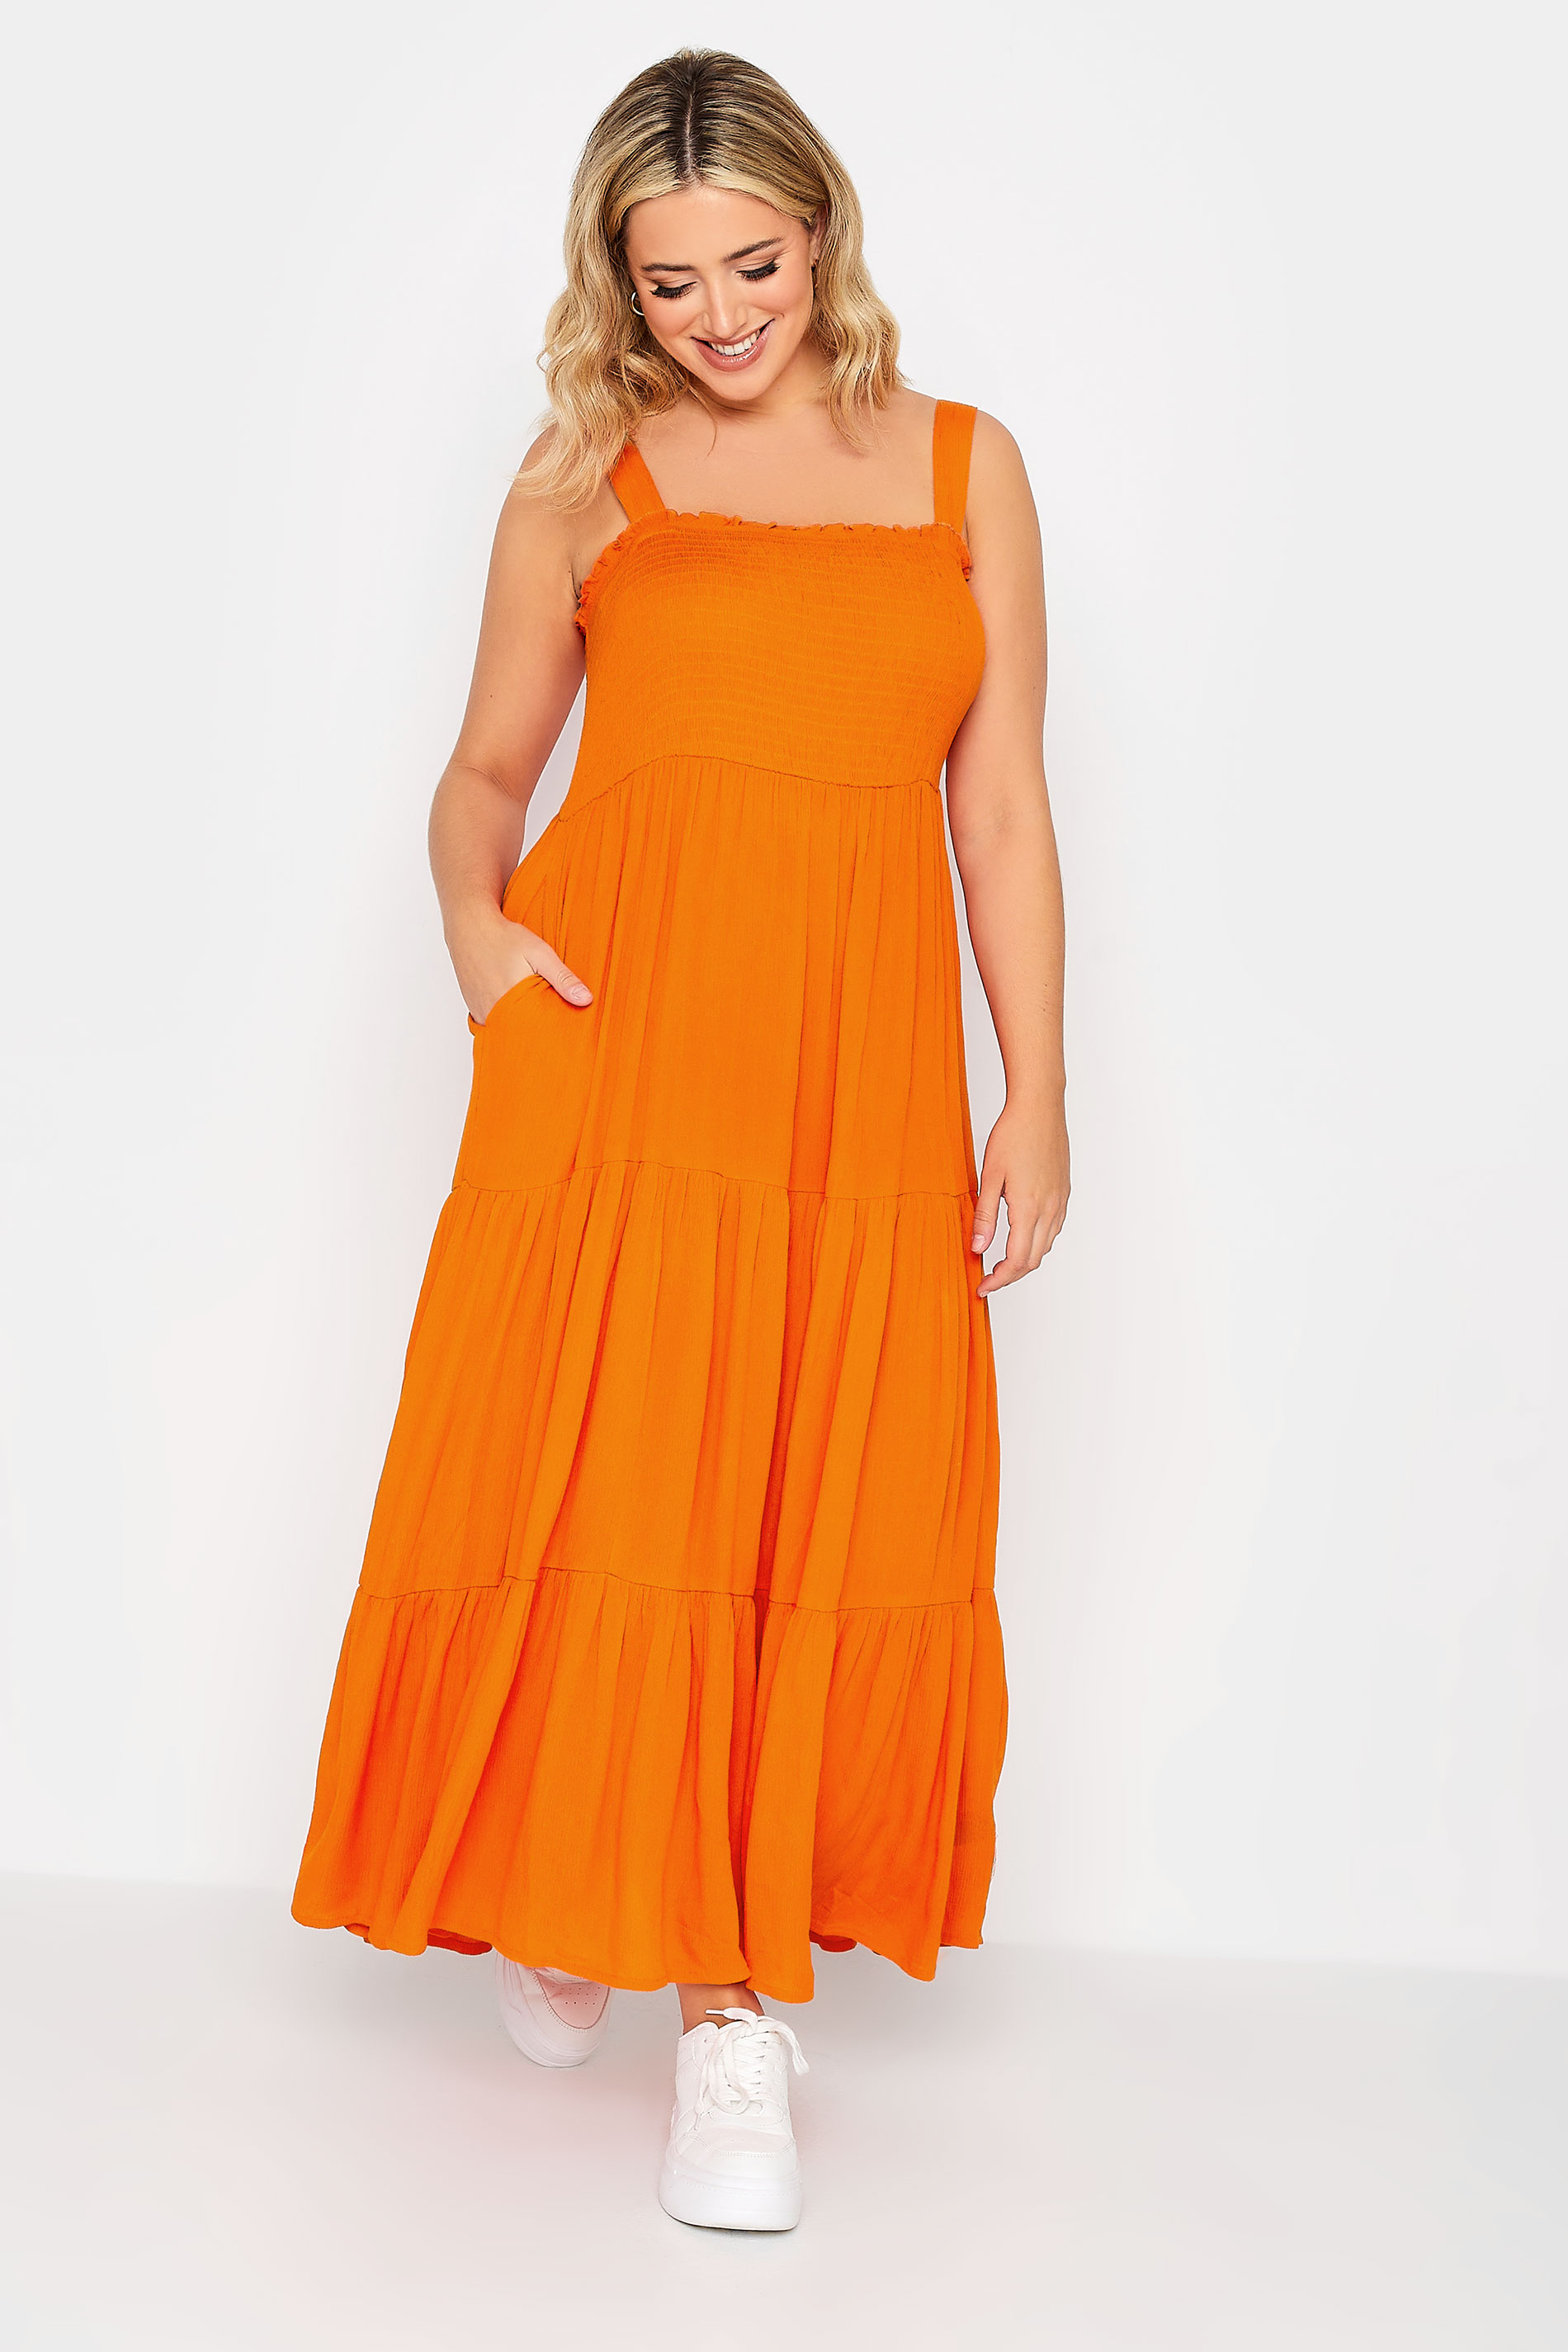 YOURS Plus Size Orange Shirred Strappy Sundress | Yours Clothing  3